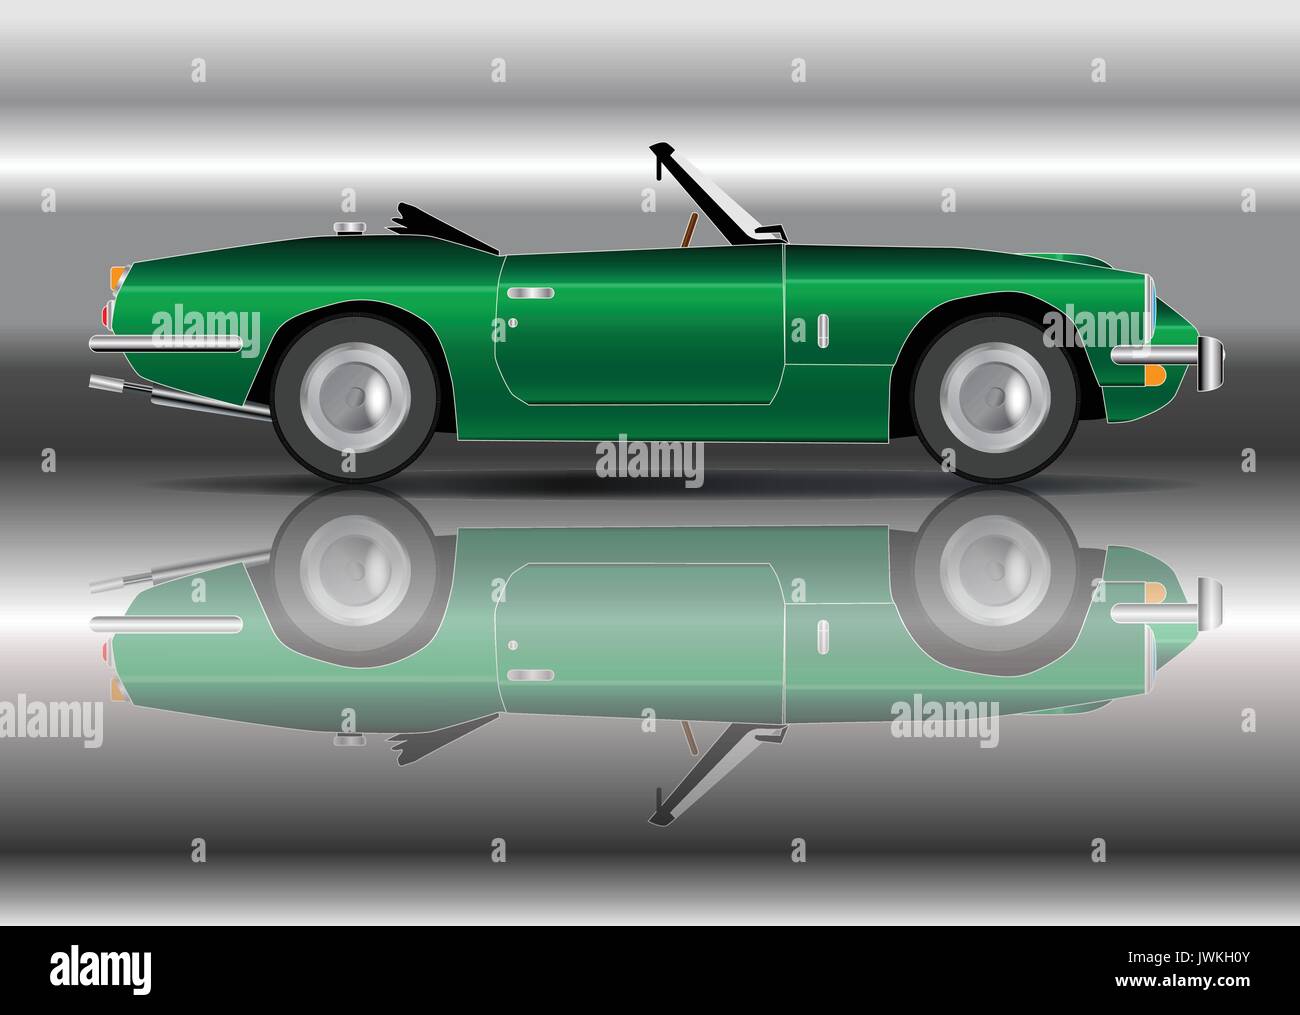 Une vieille voiture de sport de style classique de la Racing Green sur un fond argenté Illustration de Vecteur